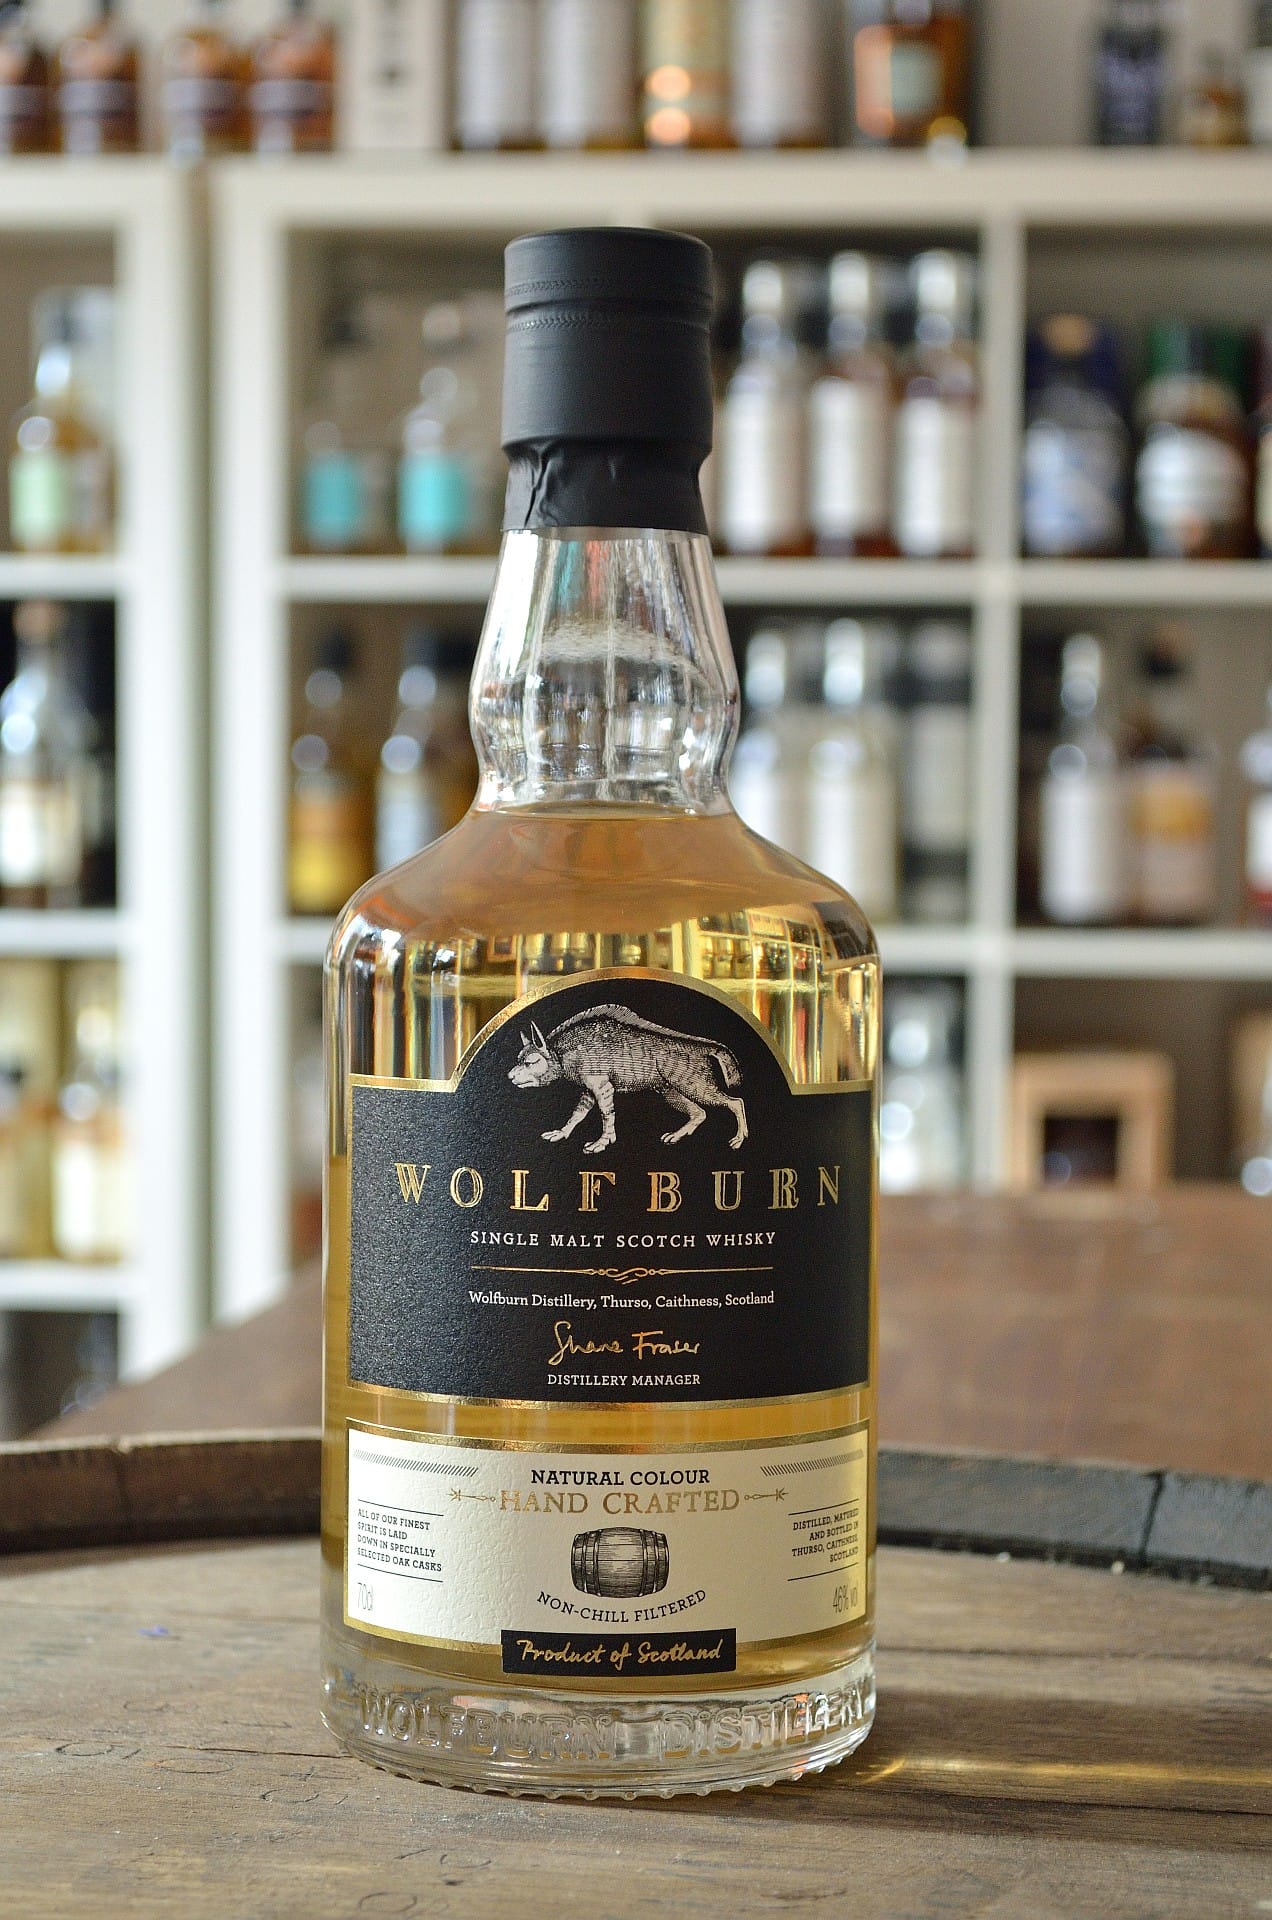 Dieser Single Malt ohne Jahrgangsangabe der neuen schottischen Highland-Destillerie Wolfburn ist um 45 Euro zu haben. Von diesem Whisky wurden rund 16.000 Flaschen gefüllt, der zuvor in gebrauchten Whiskyfässern reifte.